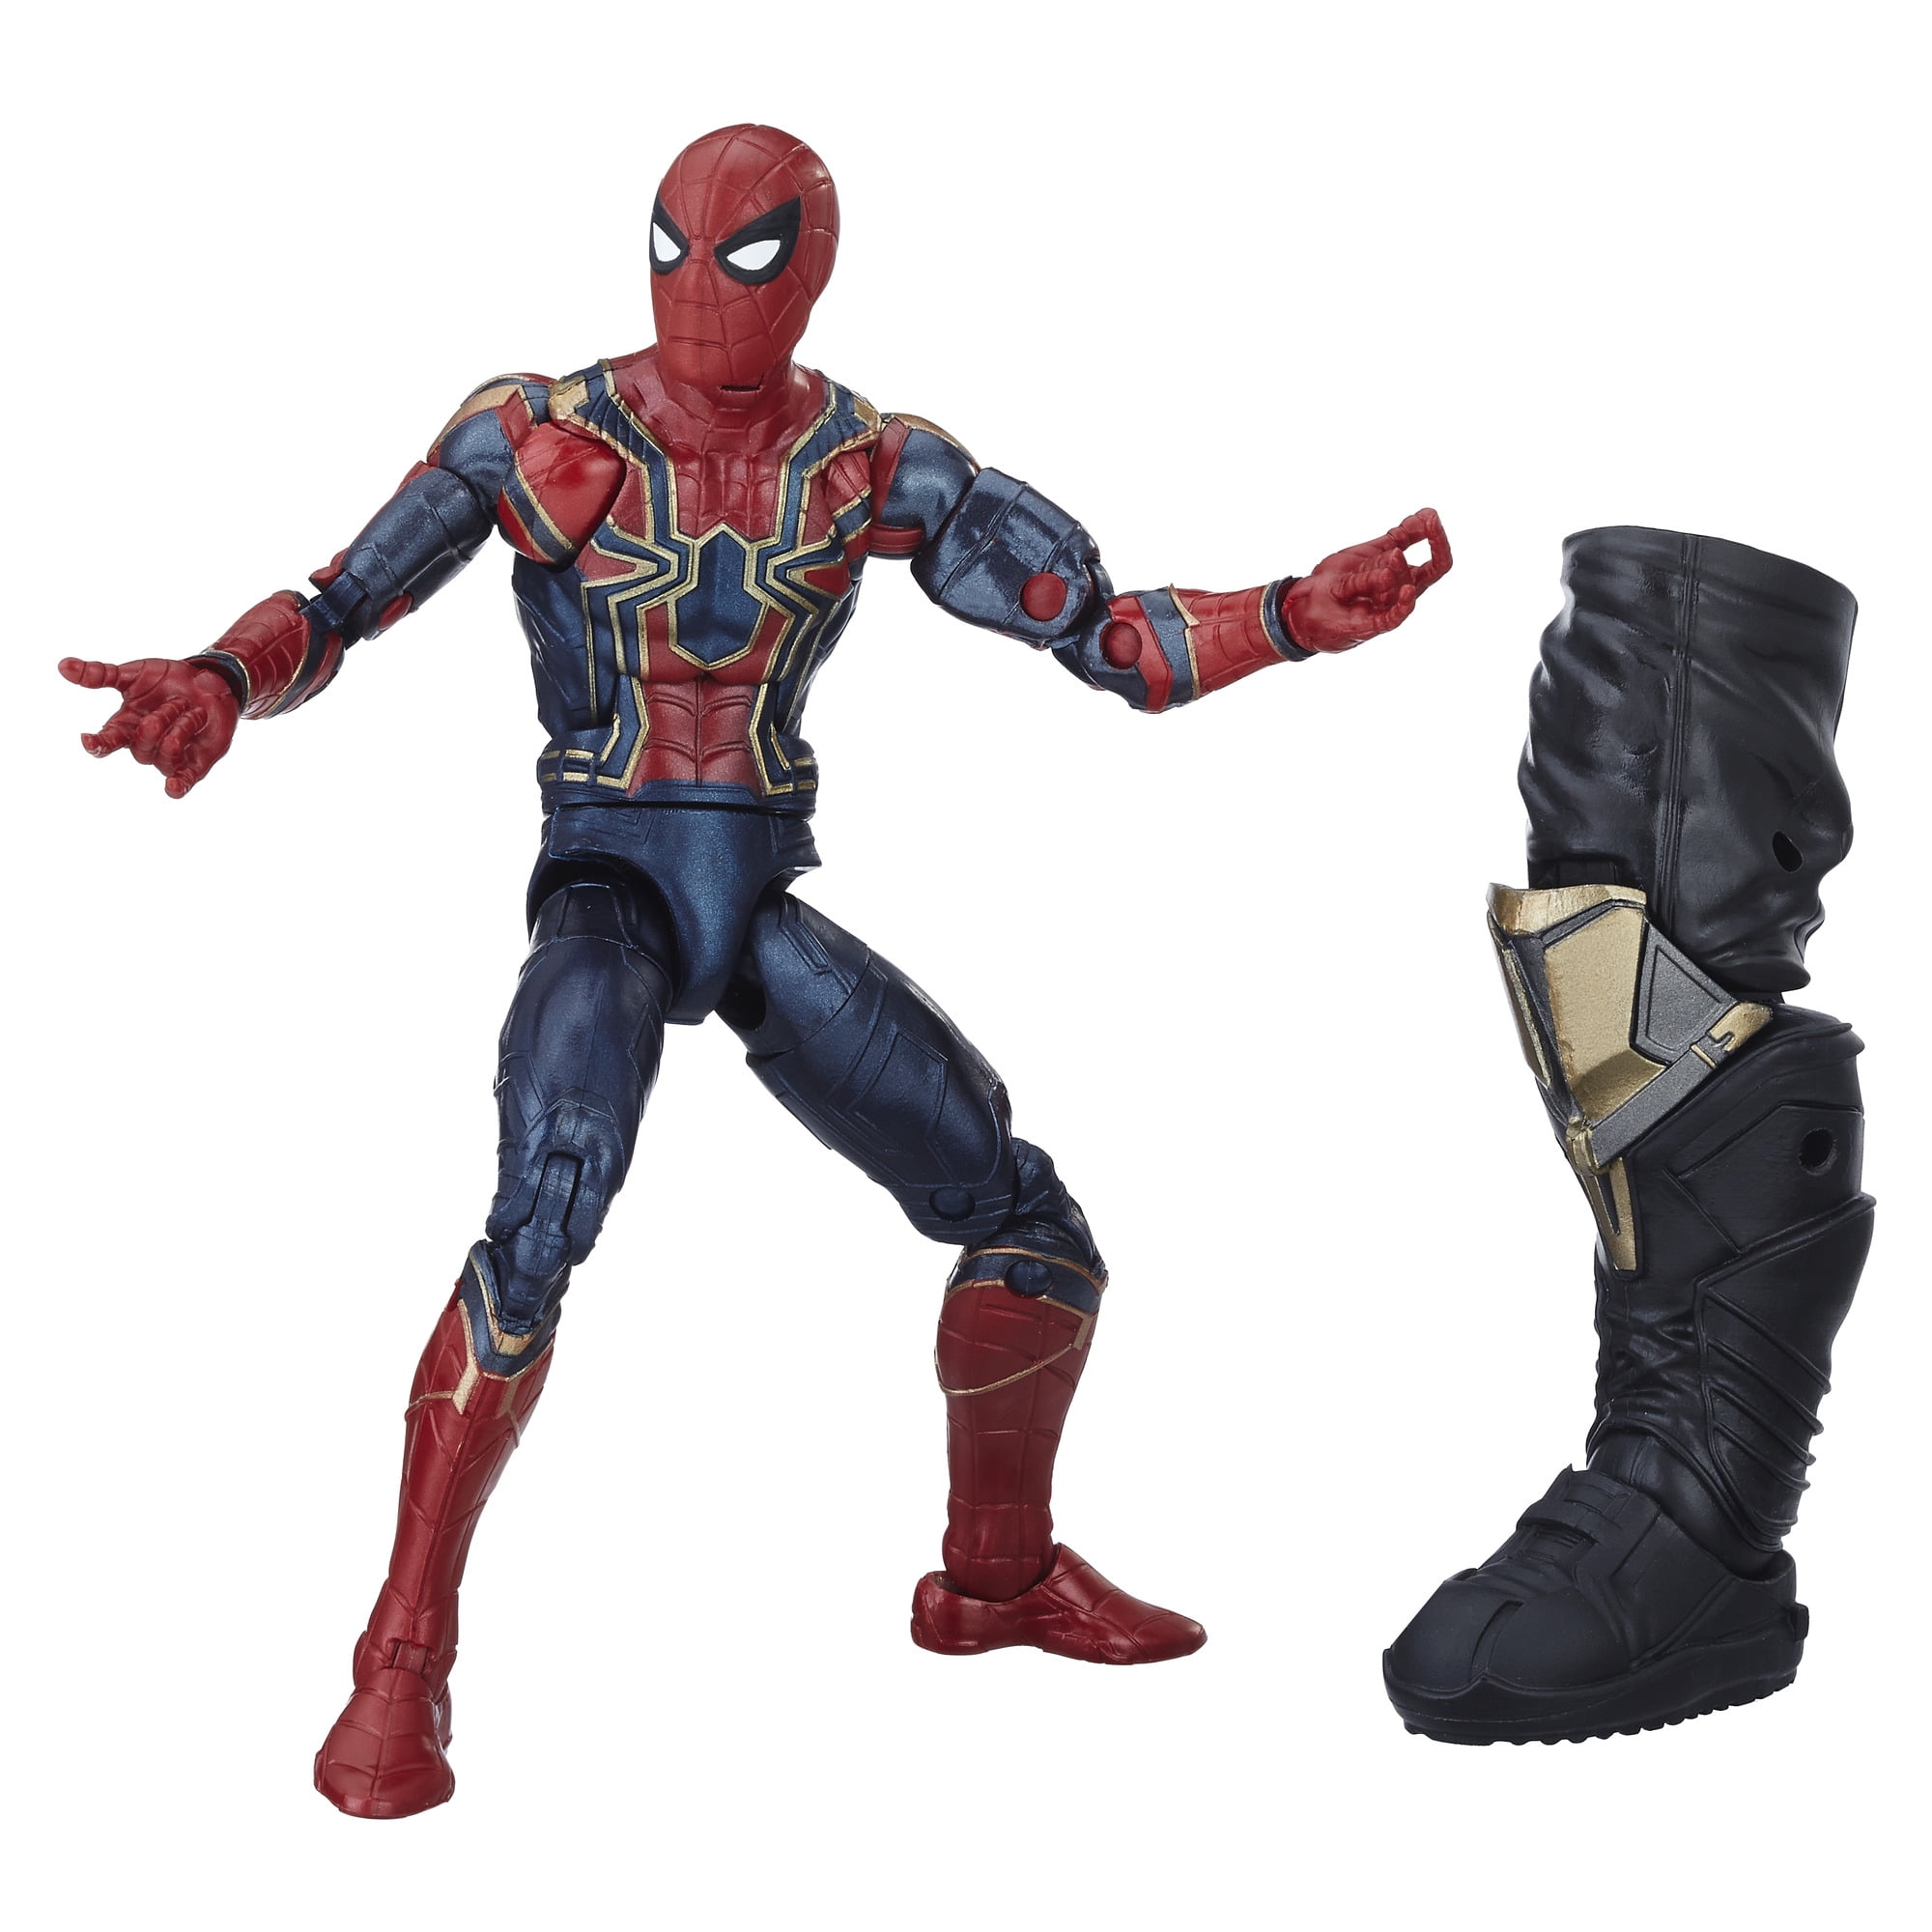 Marvel Legends E2694 Avengers Series 6 pouces Spider-Man Action Figure 